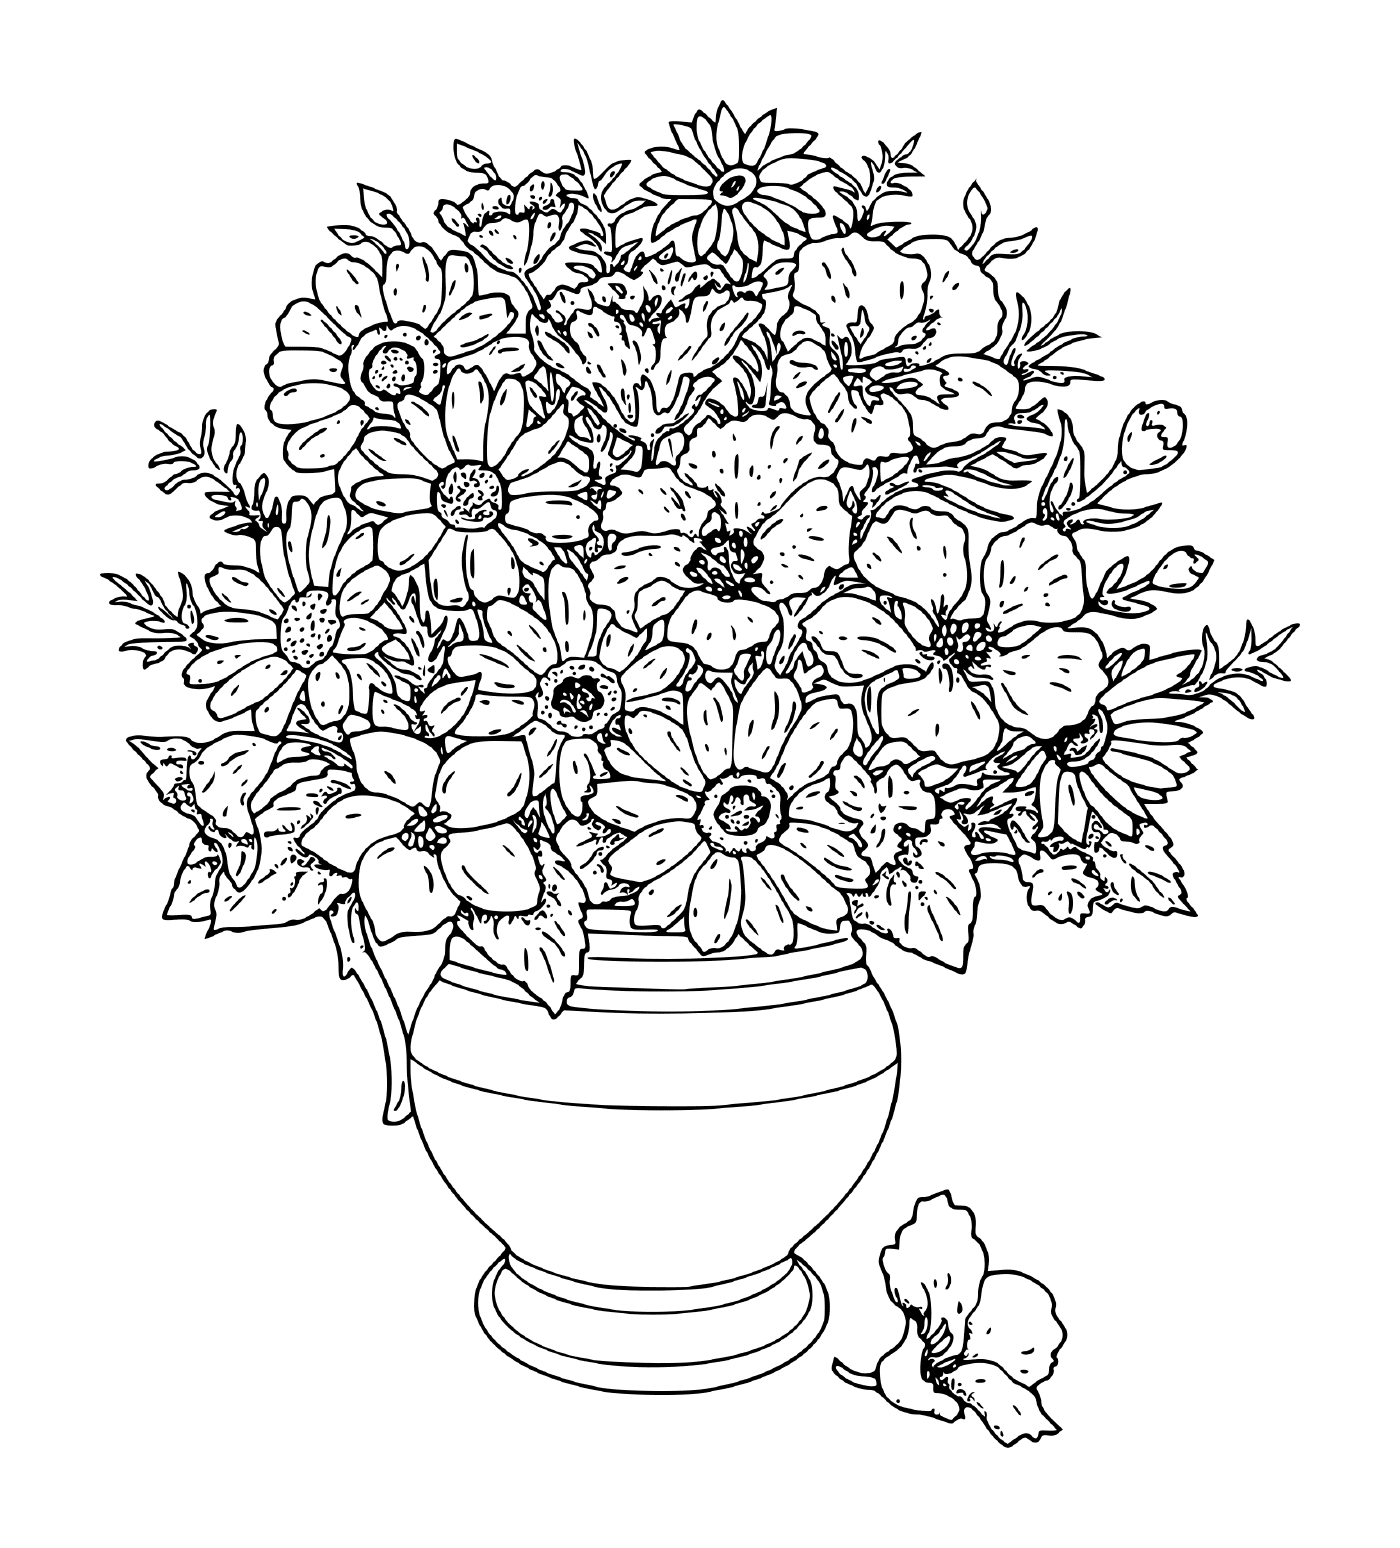  Flores em um vaso 